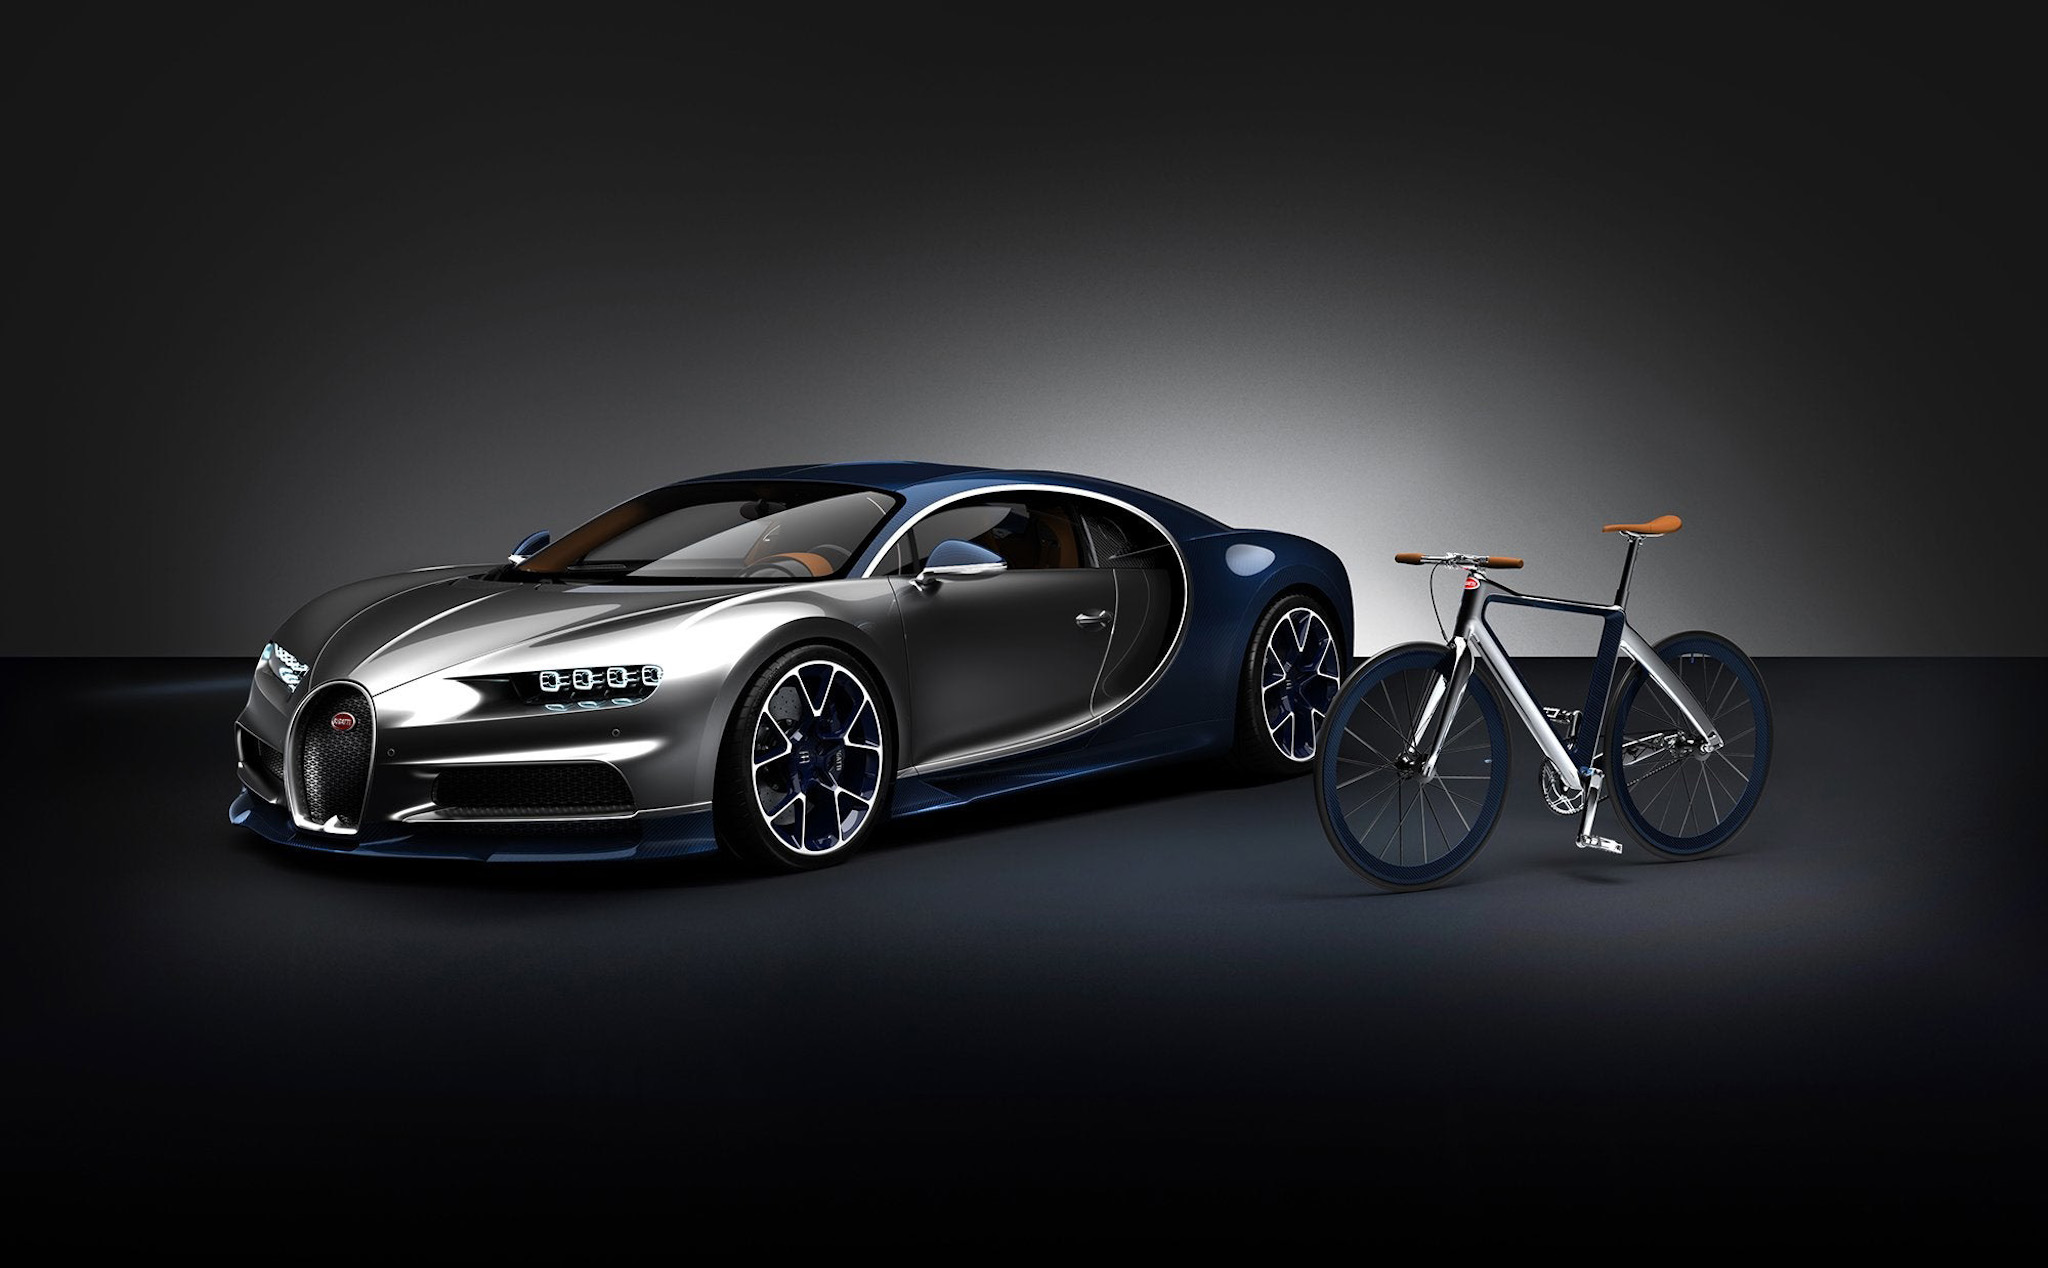 Xe đạp của Bugatti: Làm từ sợi carbon, trọng lượng 5kg, giá từ 955 triệu đồng